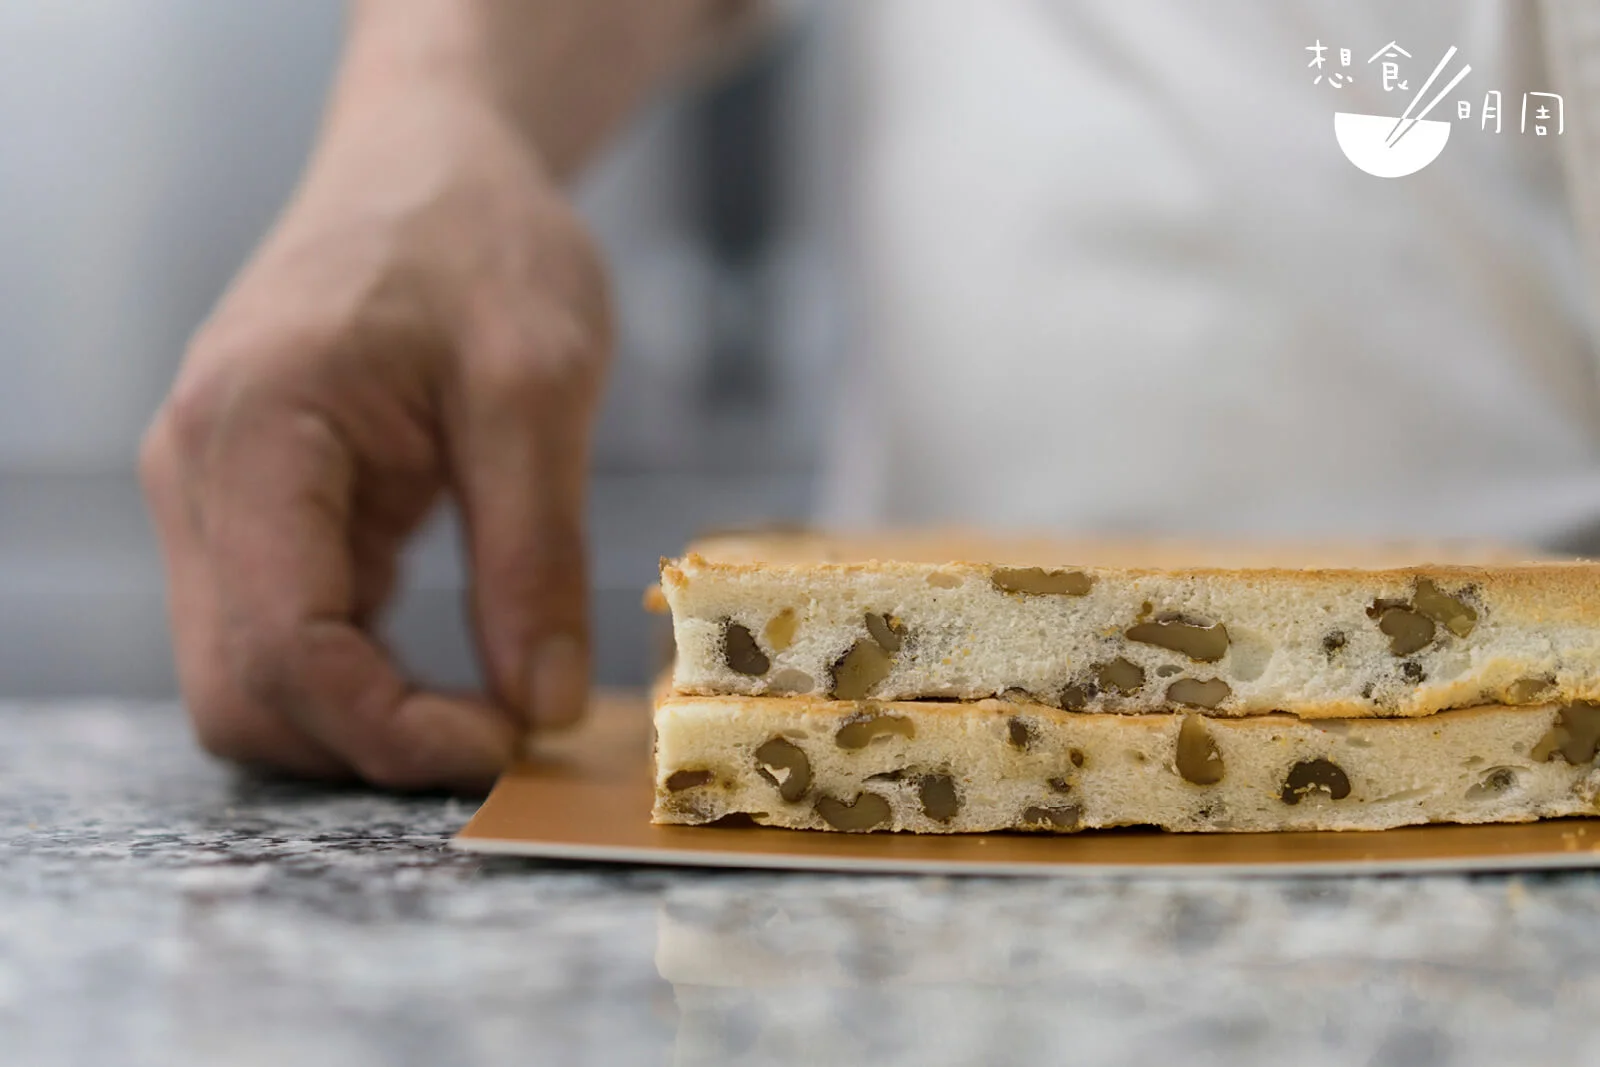 蛋白核桃蛋糕質地有點像麵包，煙韌帶嚼勁，的確能增強層次感。